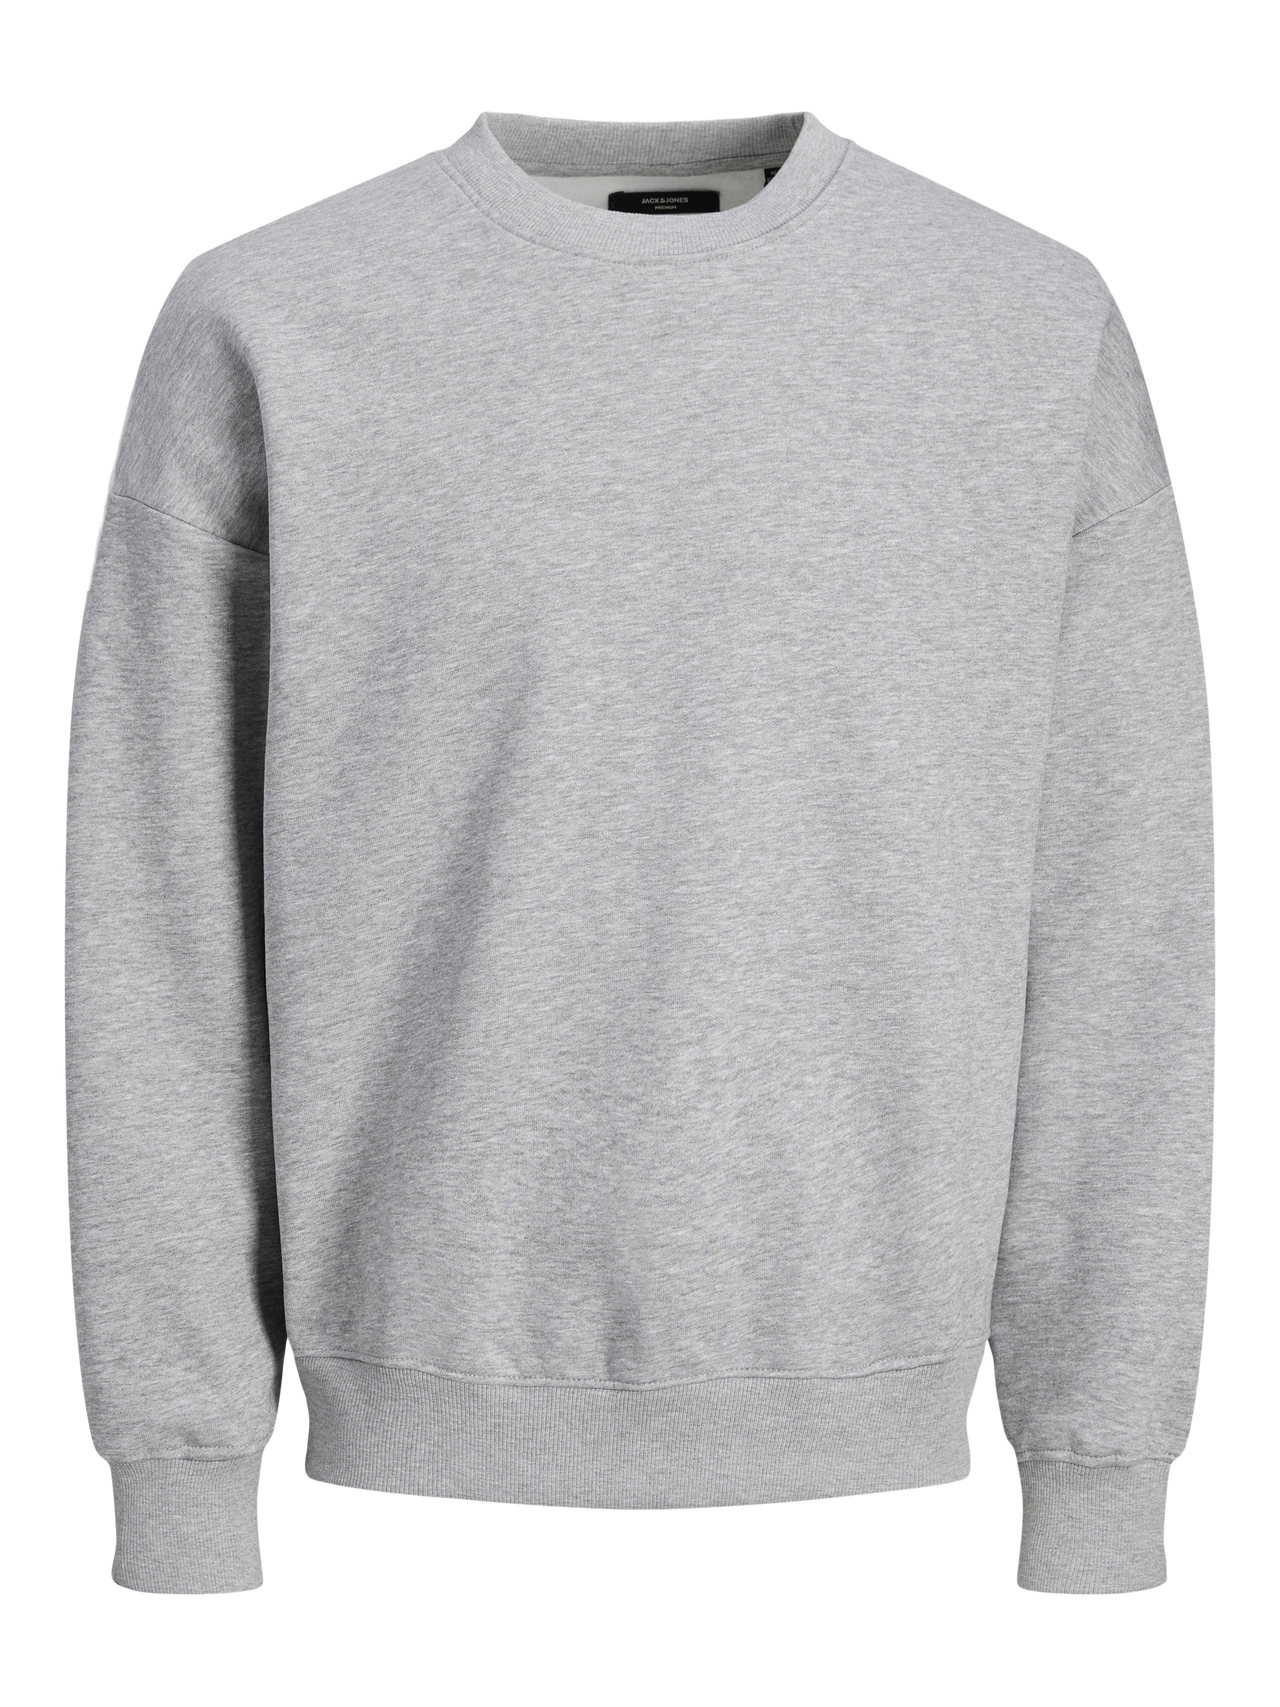 Jack & Jones Plain Crew neck Sweatshirt -Light Grey Melange - 12255177